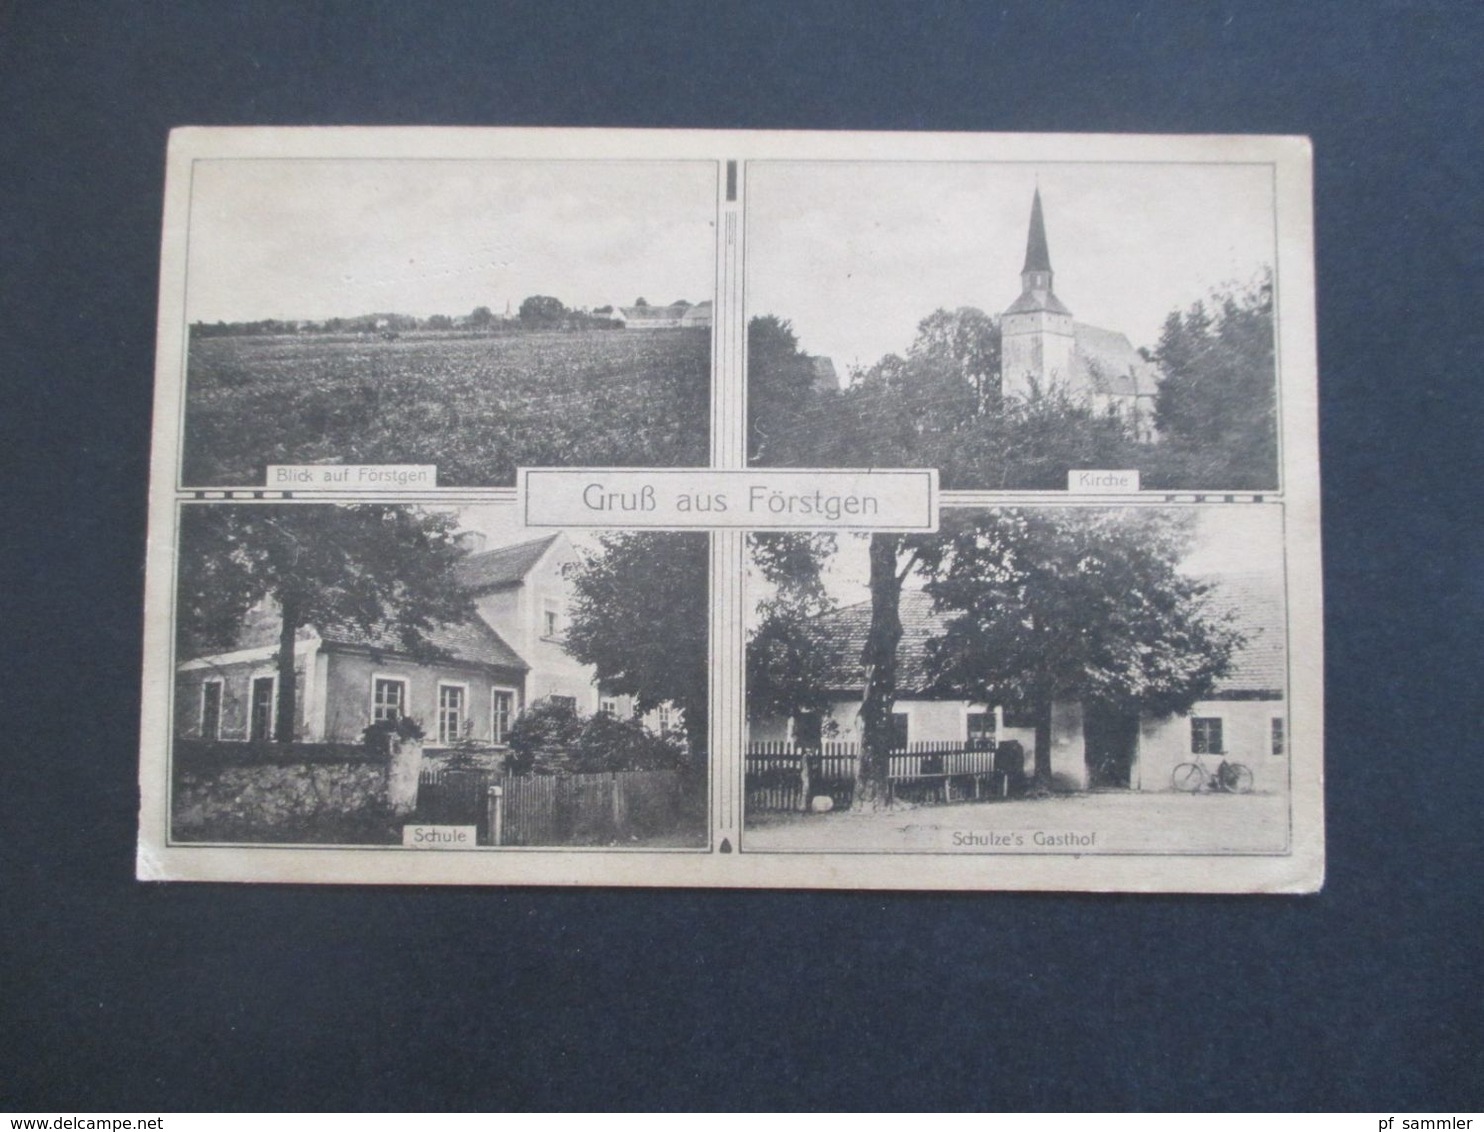 AK Mehrbildkarte 1920 Gruß Aus Förstgen Mit Kirche / Schule Und Schulze's Gasthof Verlag Fedor Bellach Sagan - Niesky